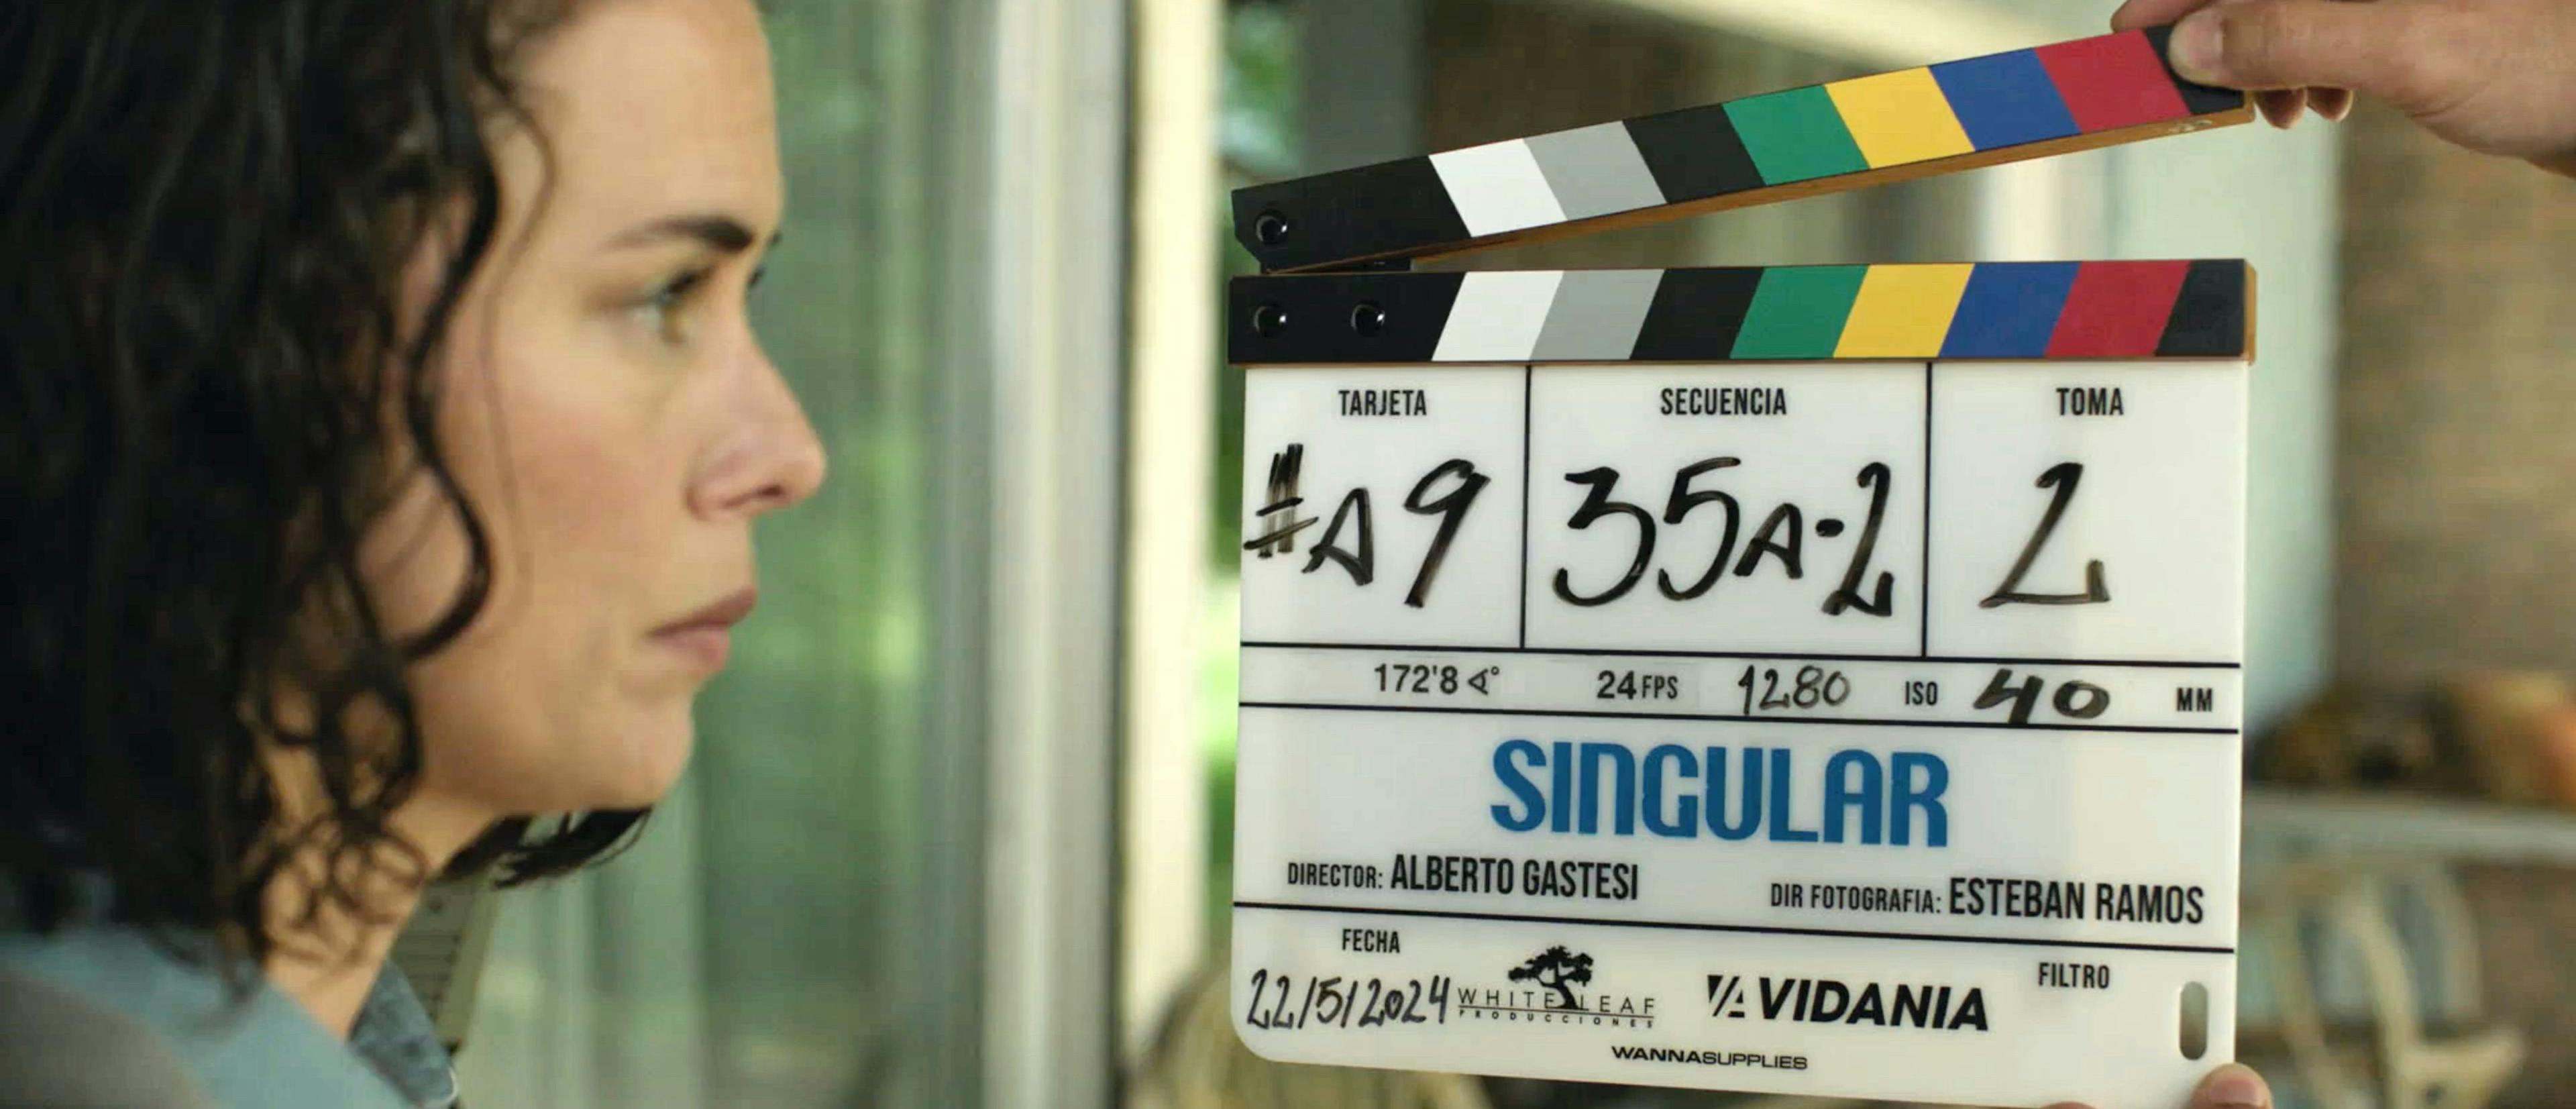 Fotografía del rodaje de 'Singular' con Patricia López Arnaiz